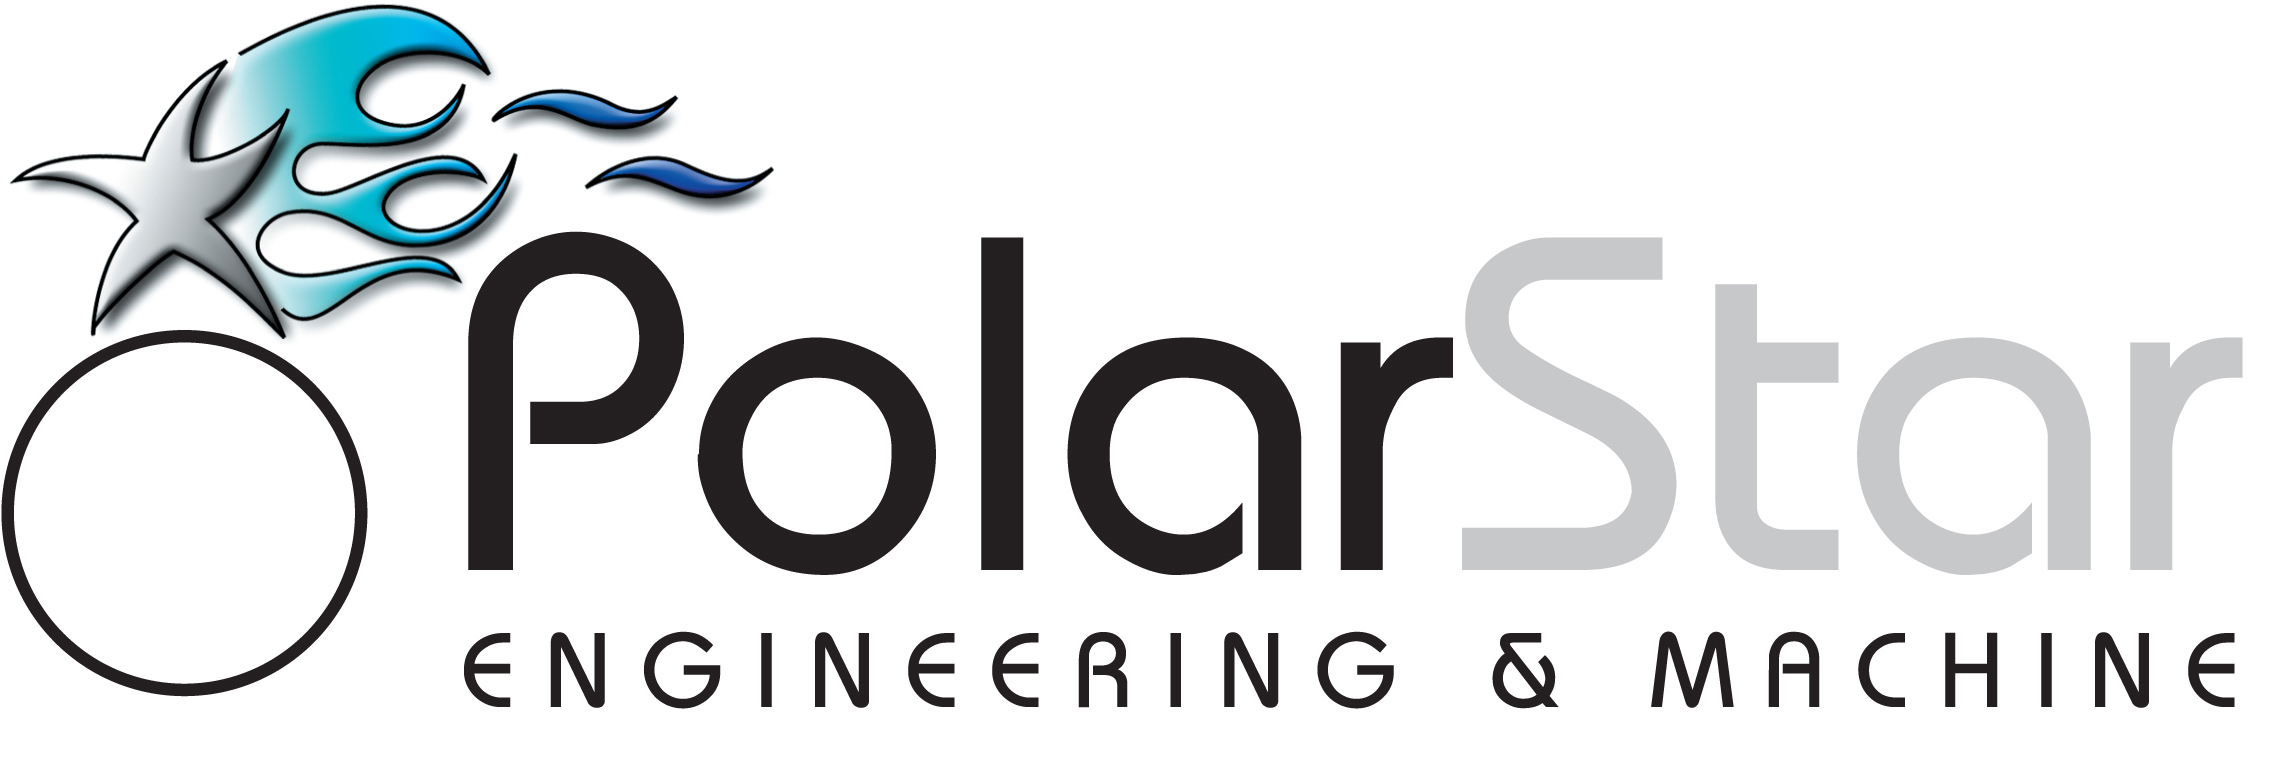 PolarStar Engineering & Machine